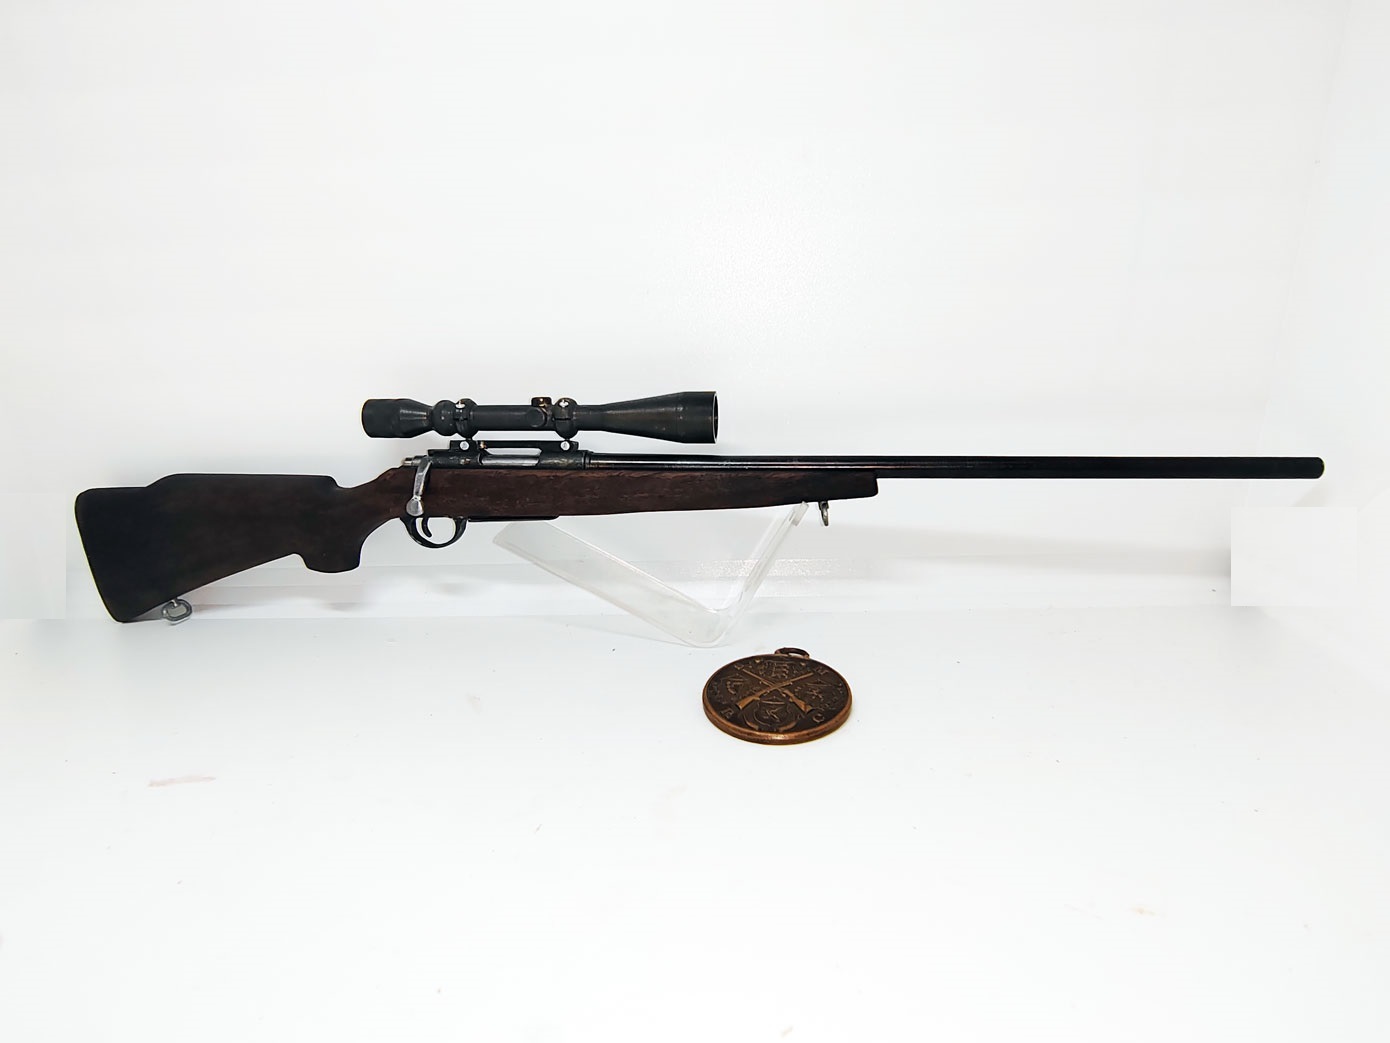 Sniper rifle Remington 700 vietnam era 1:3 scale - купить по выгодной ...